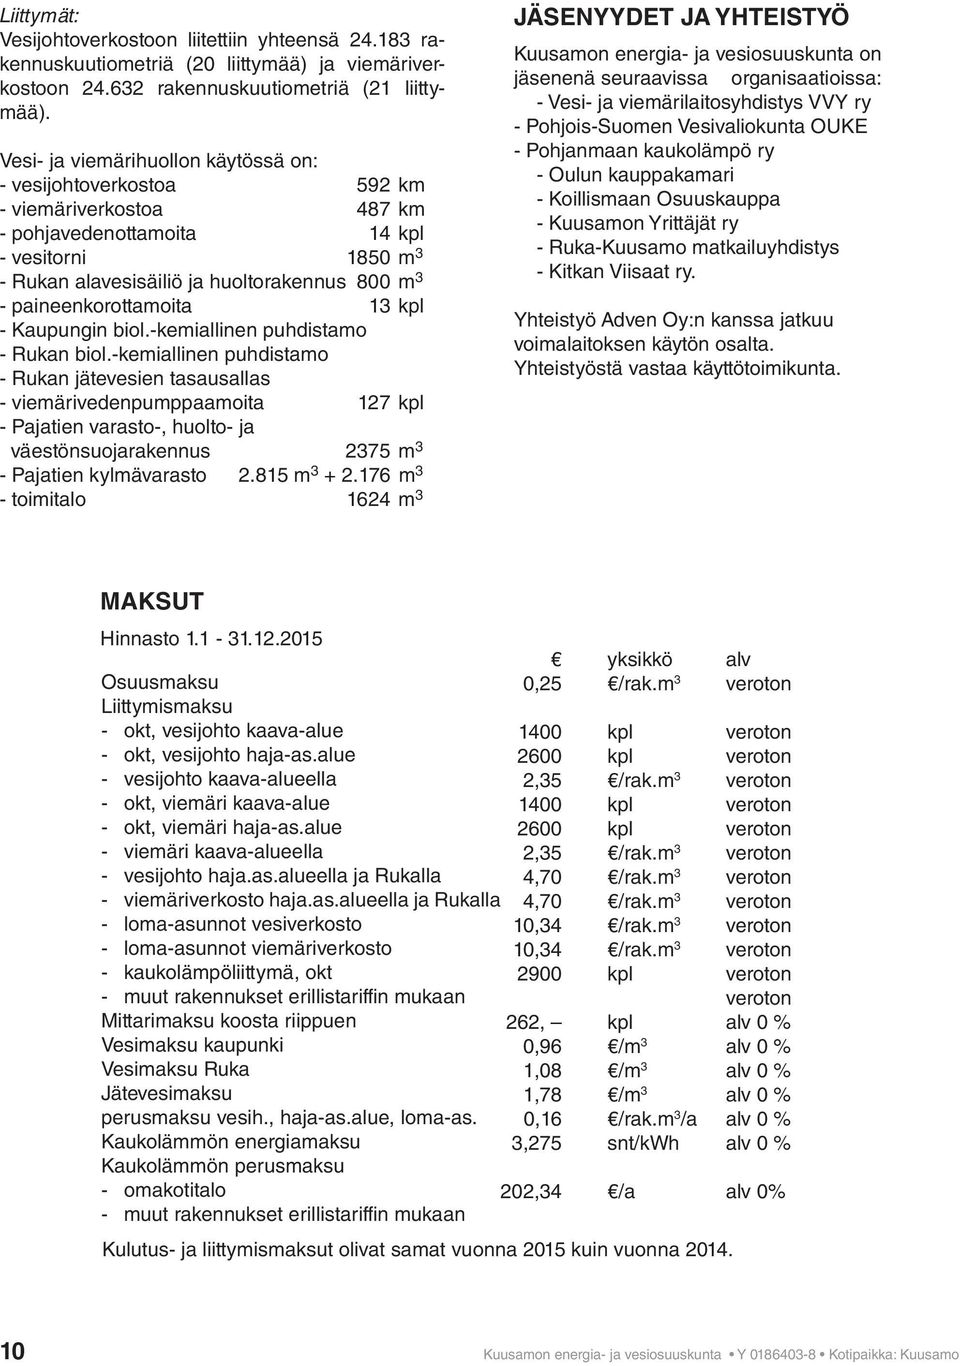 paineenkorottamoita 13 kpl - Kaupungin biol.-kemiallinen puhdistamo - Rukan biol.